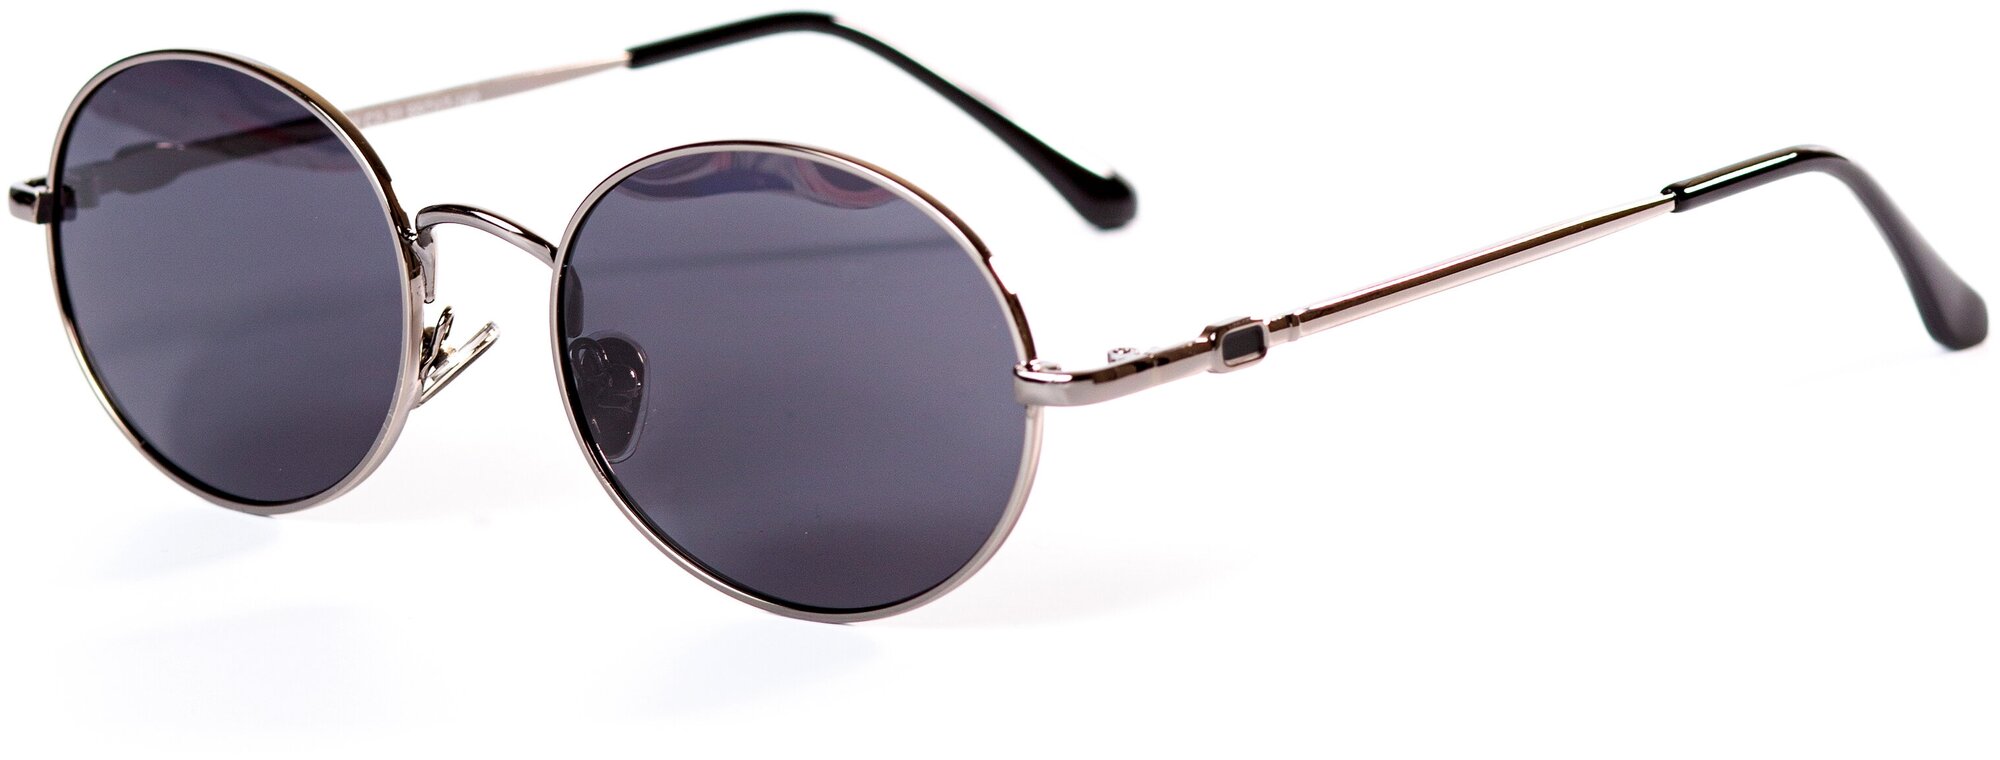 Солнцезащитные очки женские / Оправа овальная / Стильные очки / Ультрафиолетовый фильтр / Защита UV400 / Чехол в подарок/Модный аксессуар/ 280322415